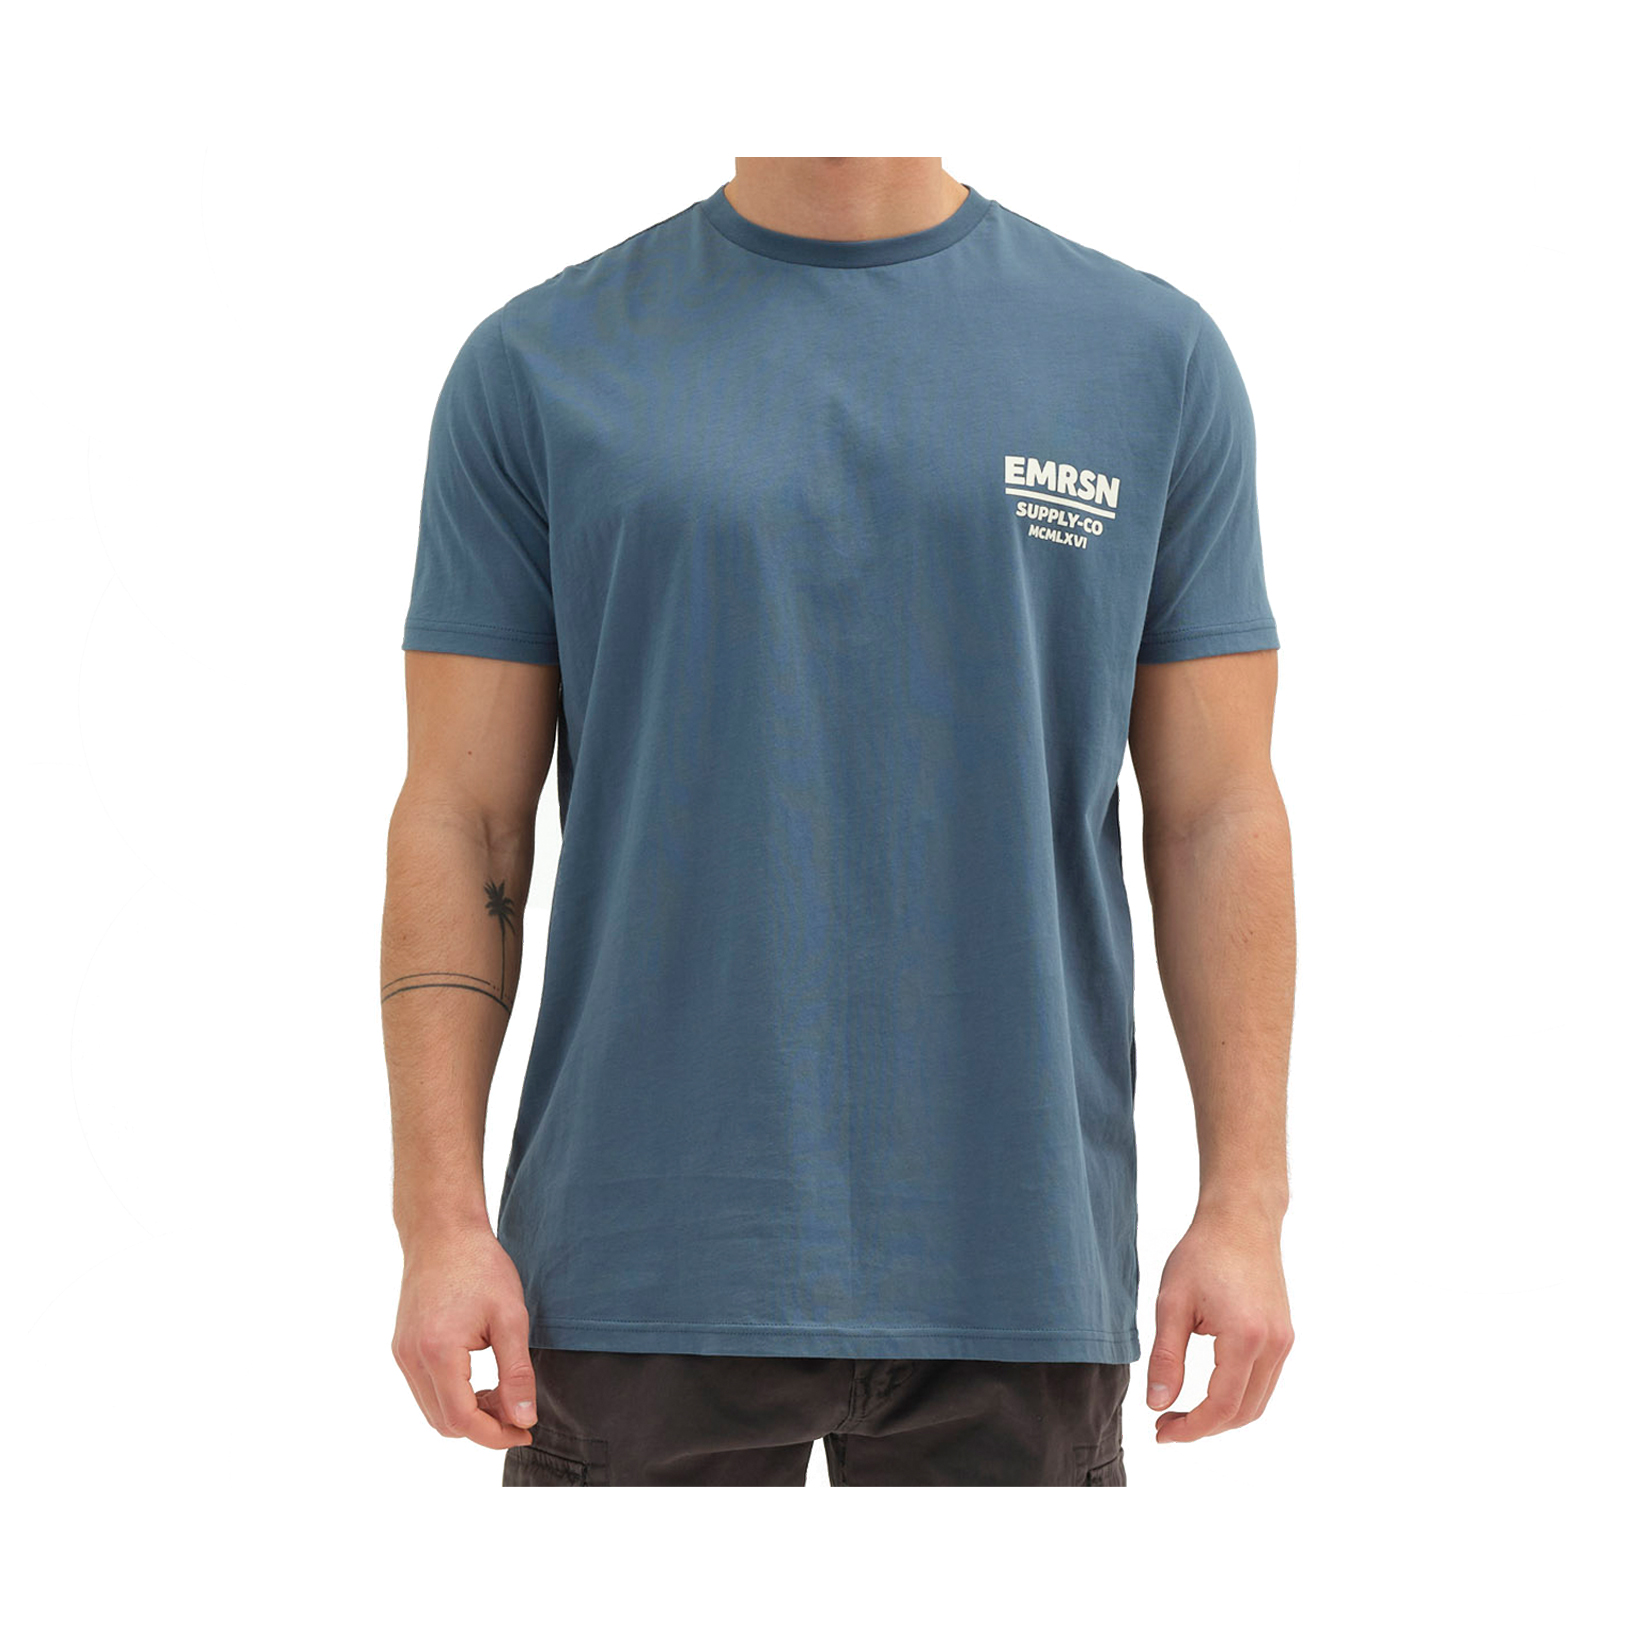 Emerson T-Shirt Πετρολ